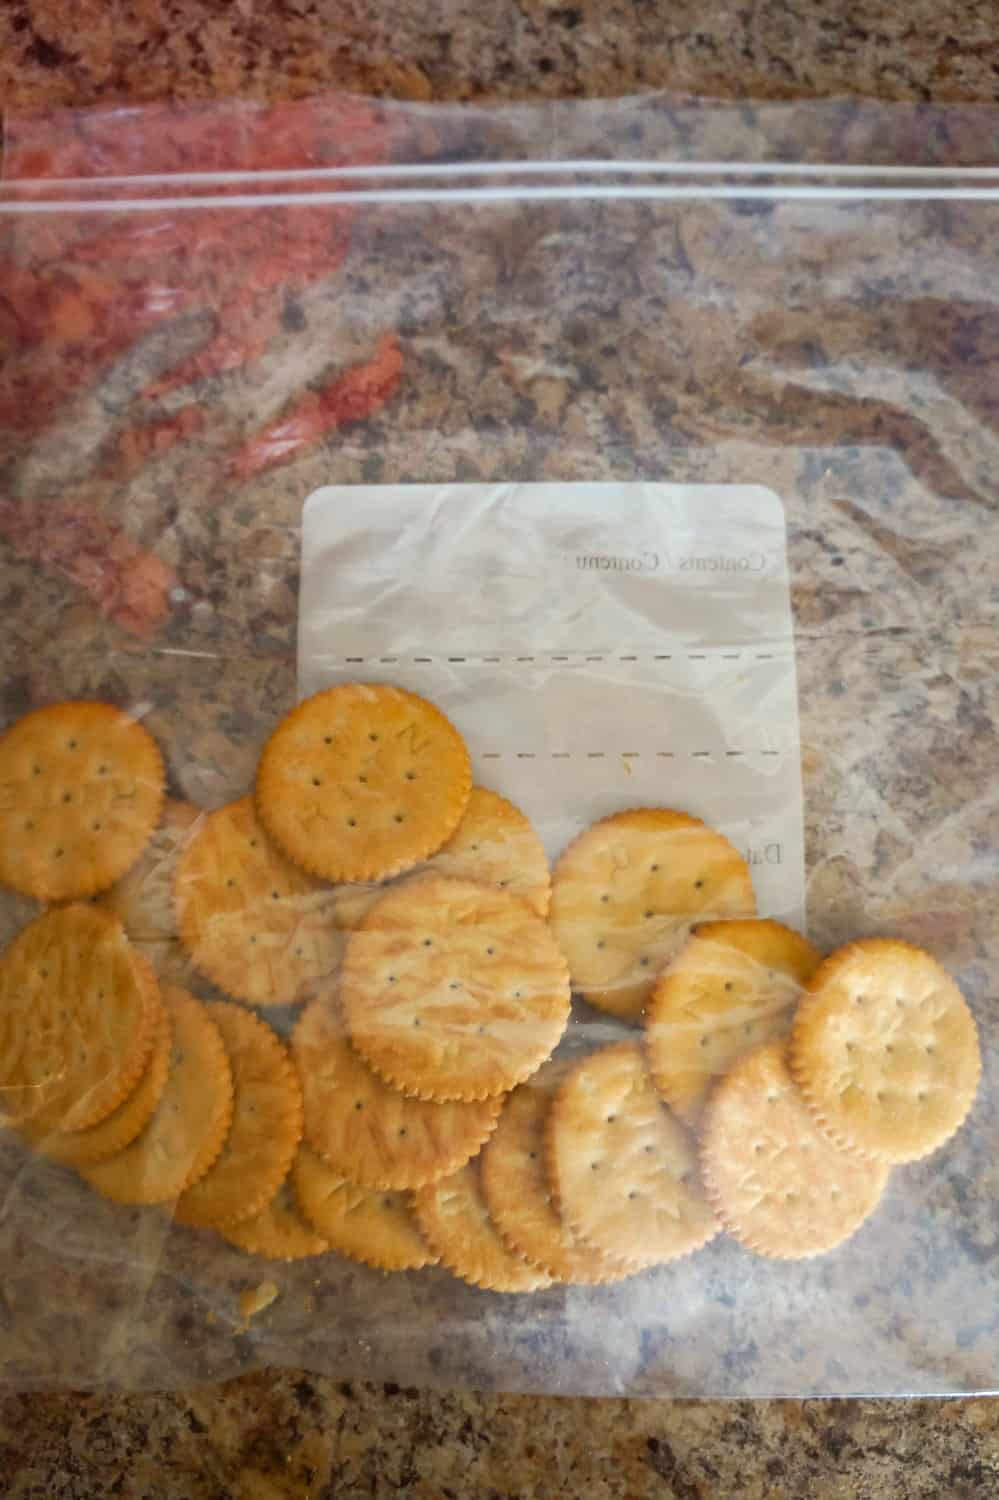 Ritz crackers in a large Ziploc bag